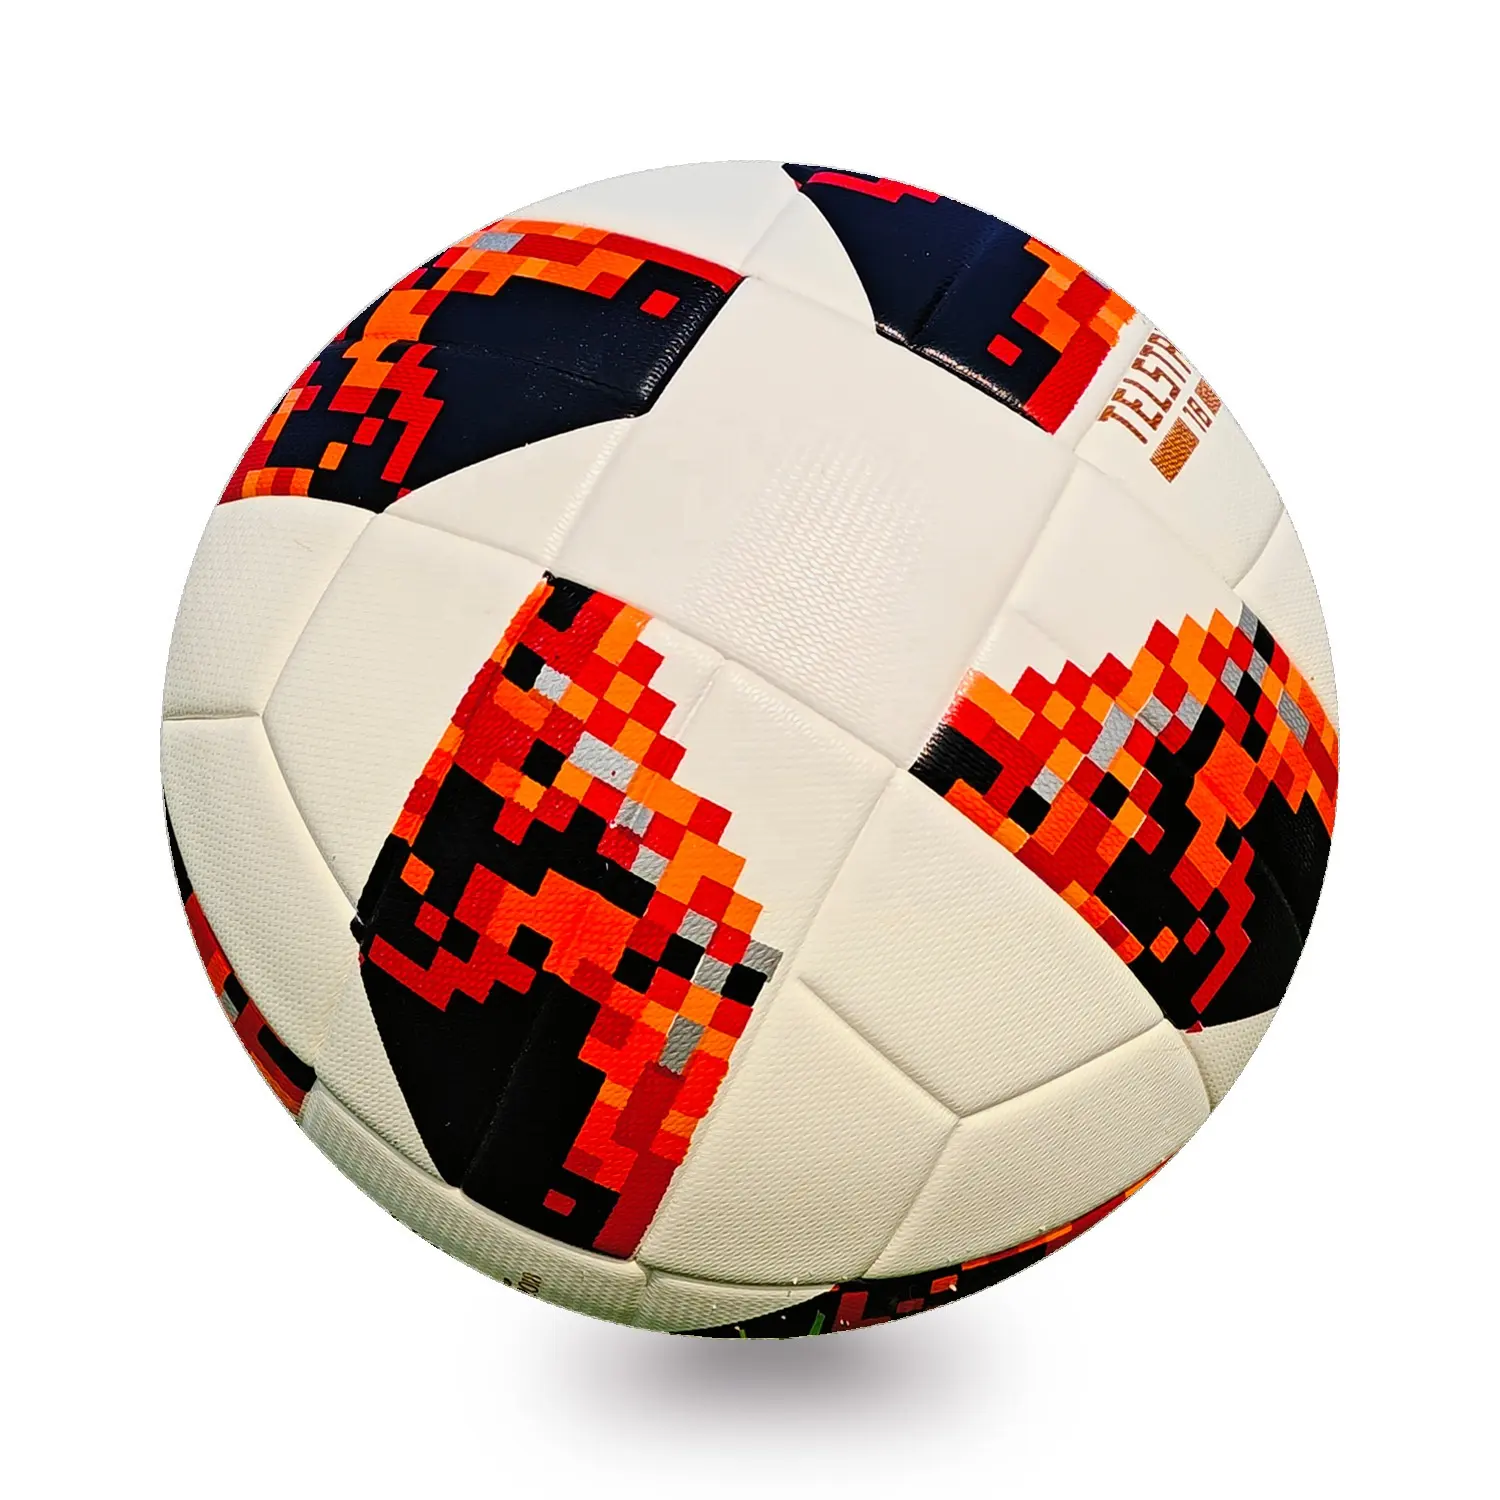 Atacado logotipo personalizado barato promocional profissional tamanho 5 balão de futebol de PVC costurado bola de futebol bola de futebol